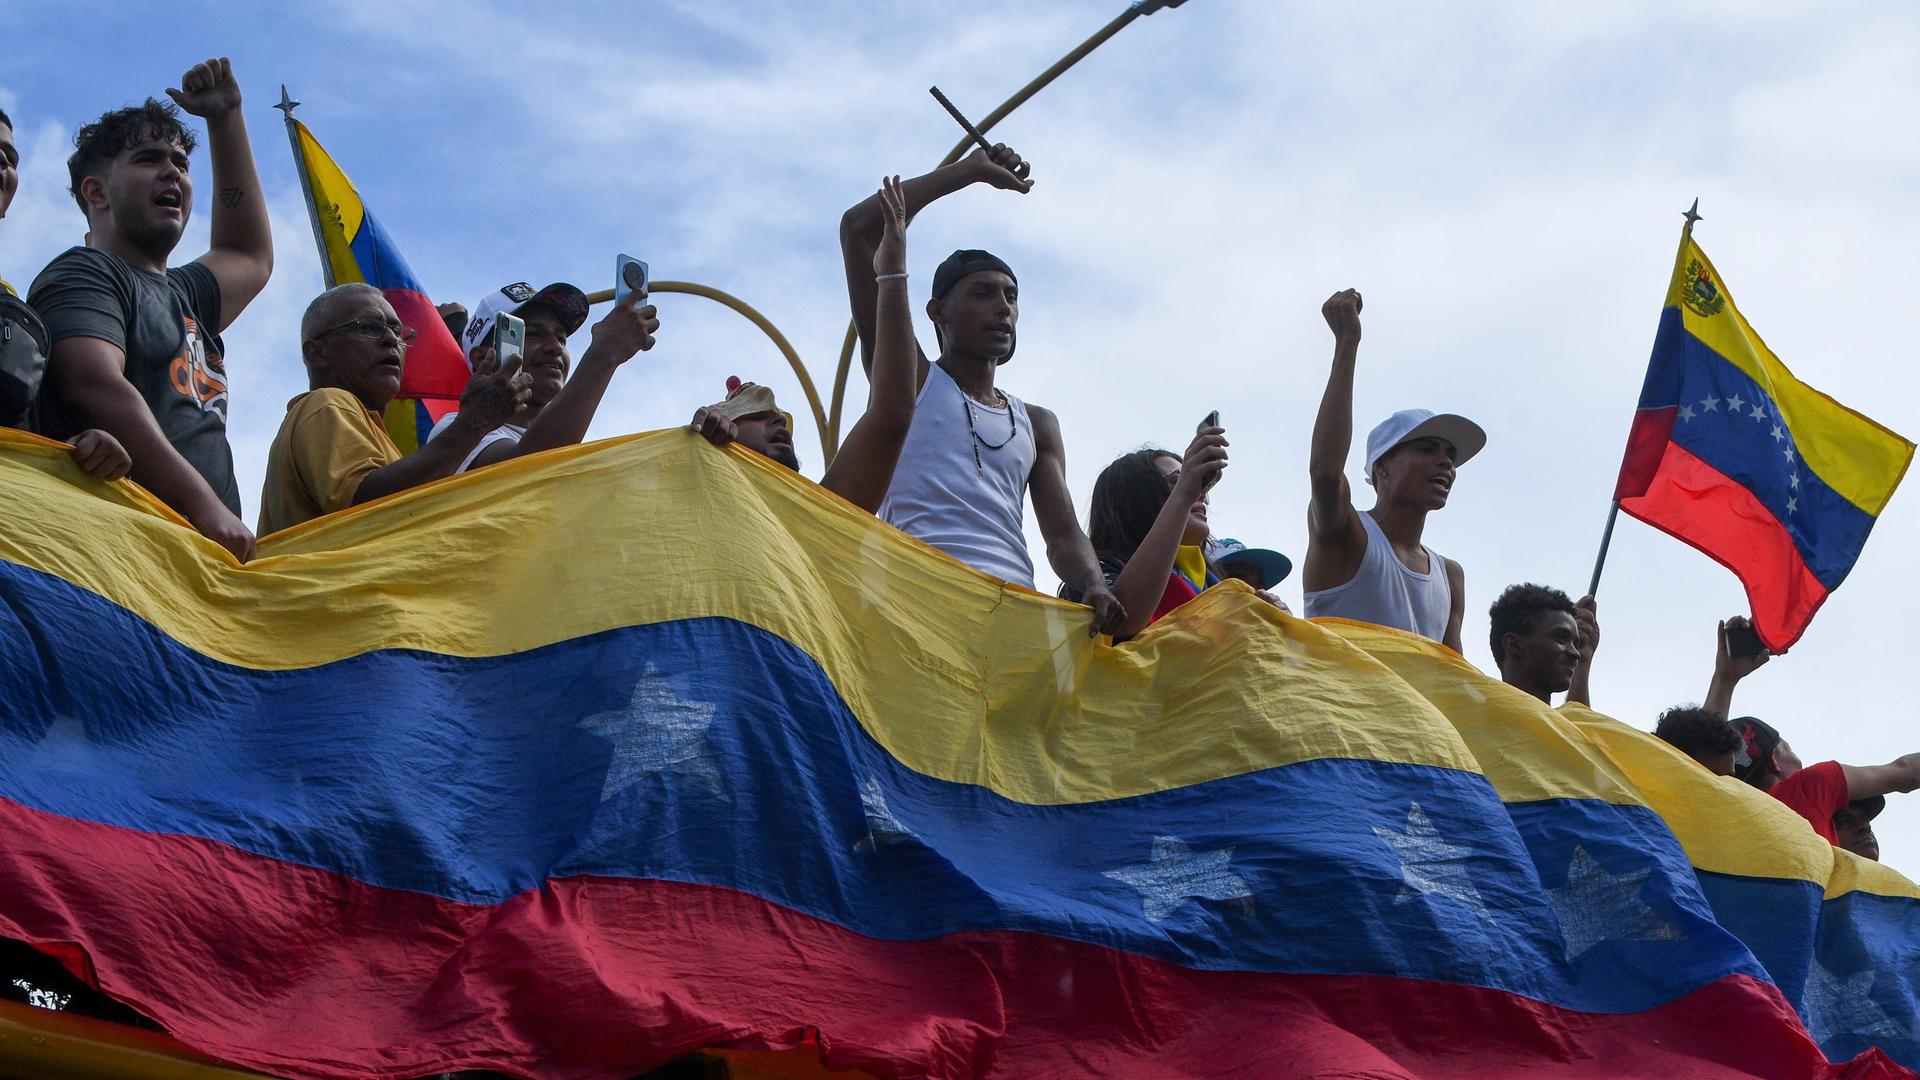 Demonstranten halten eine Landesfahne Venezuelas vor sich, andere halten eine Flagge.